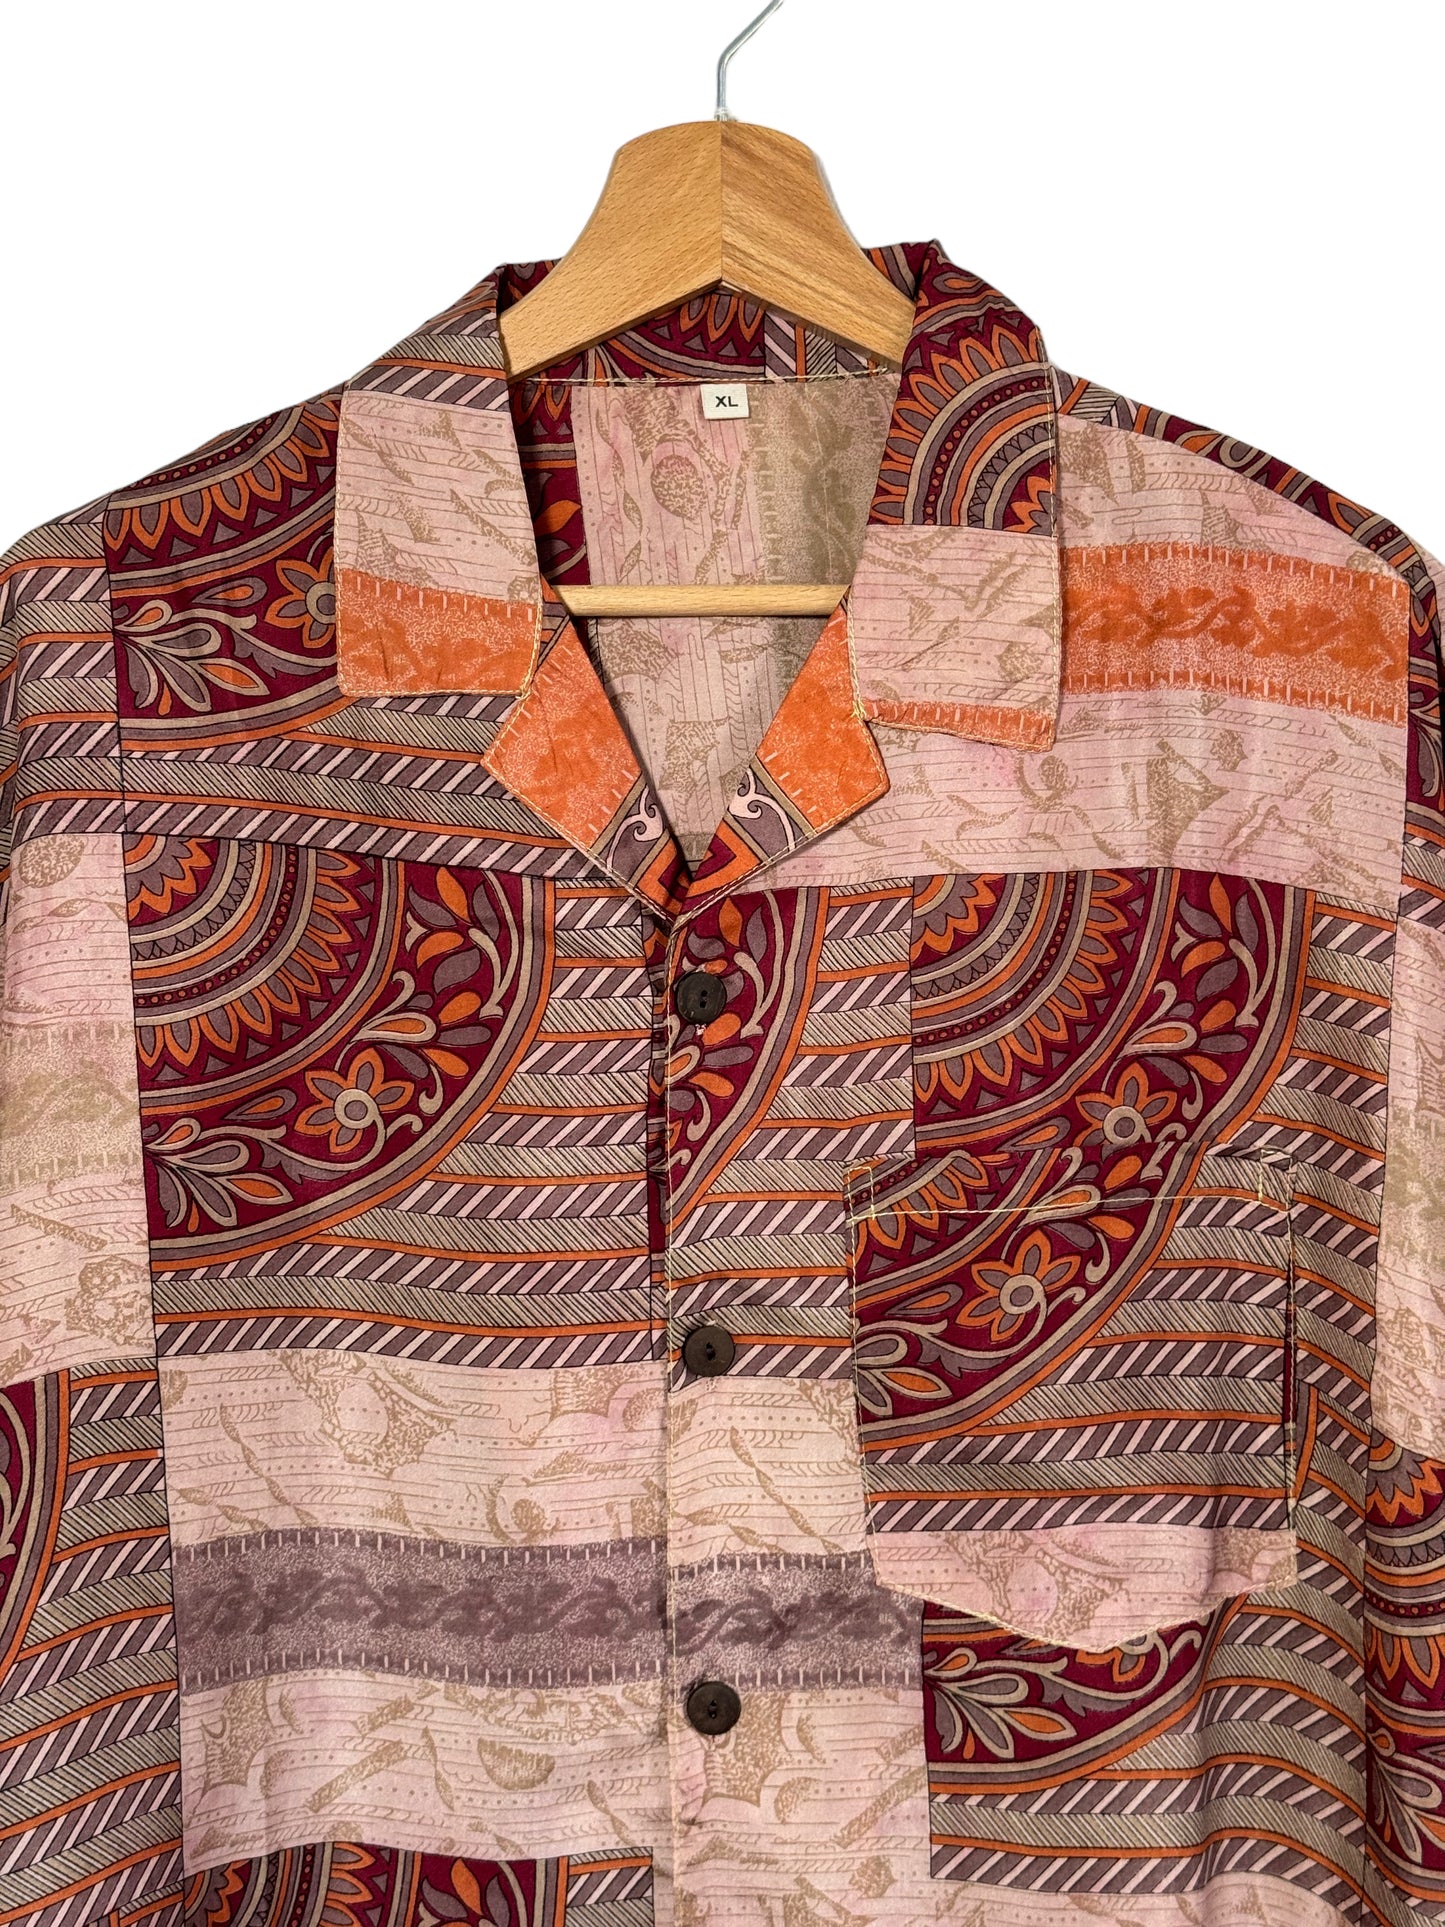 Camicia vintage in seta (XL)